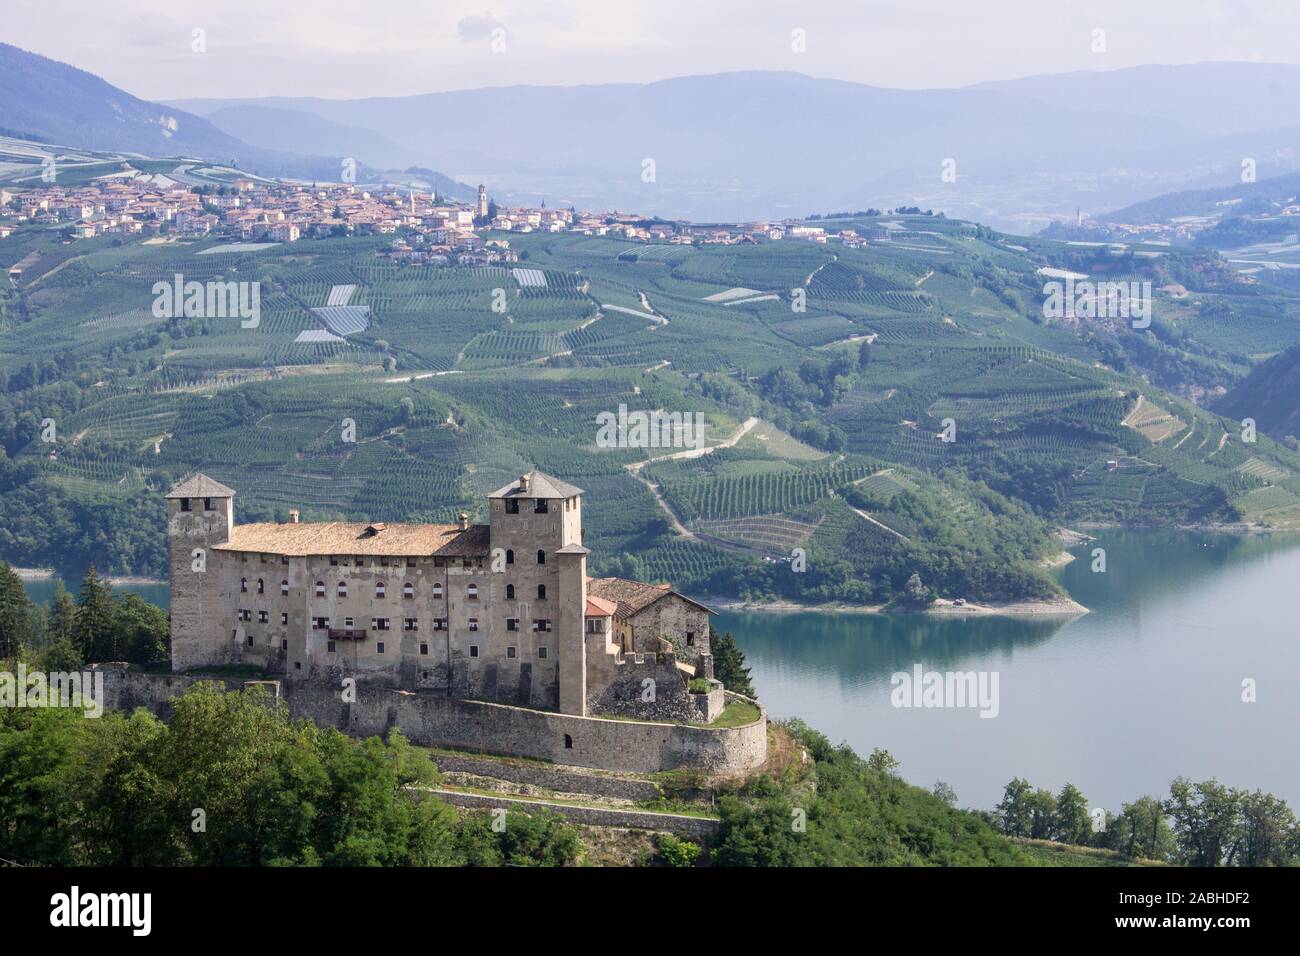 Castello di Cles e lago di Santa Giustina - Cles castle and Santa Giustina lake Stock Photo